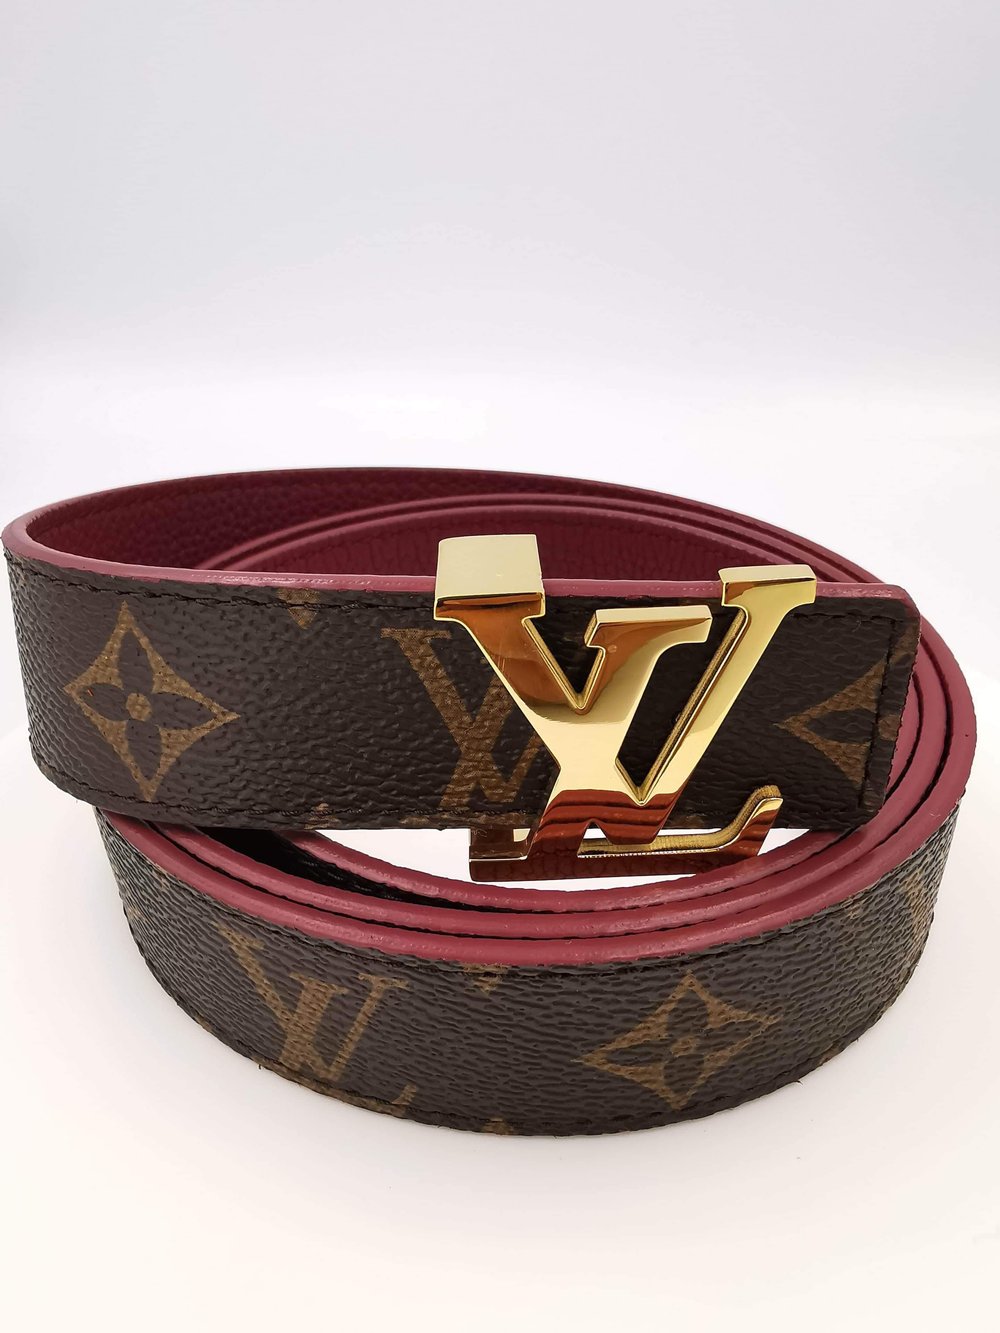 Louis Vuitton LV Initiales Monogram Canvas Buckle Belt